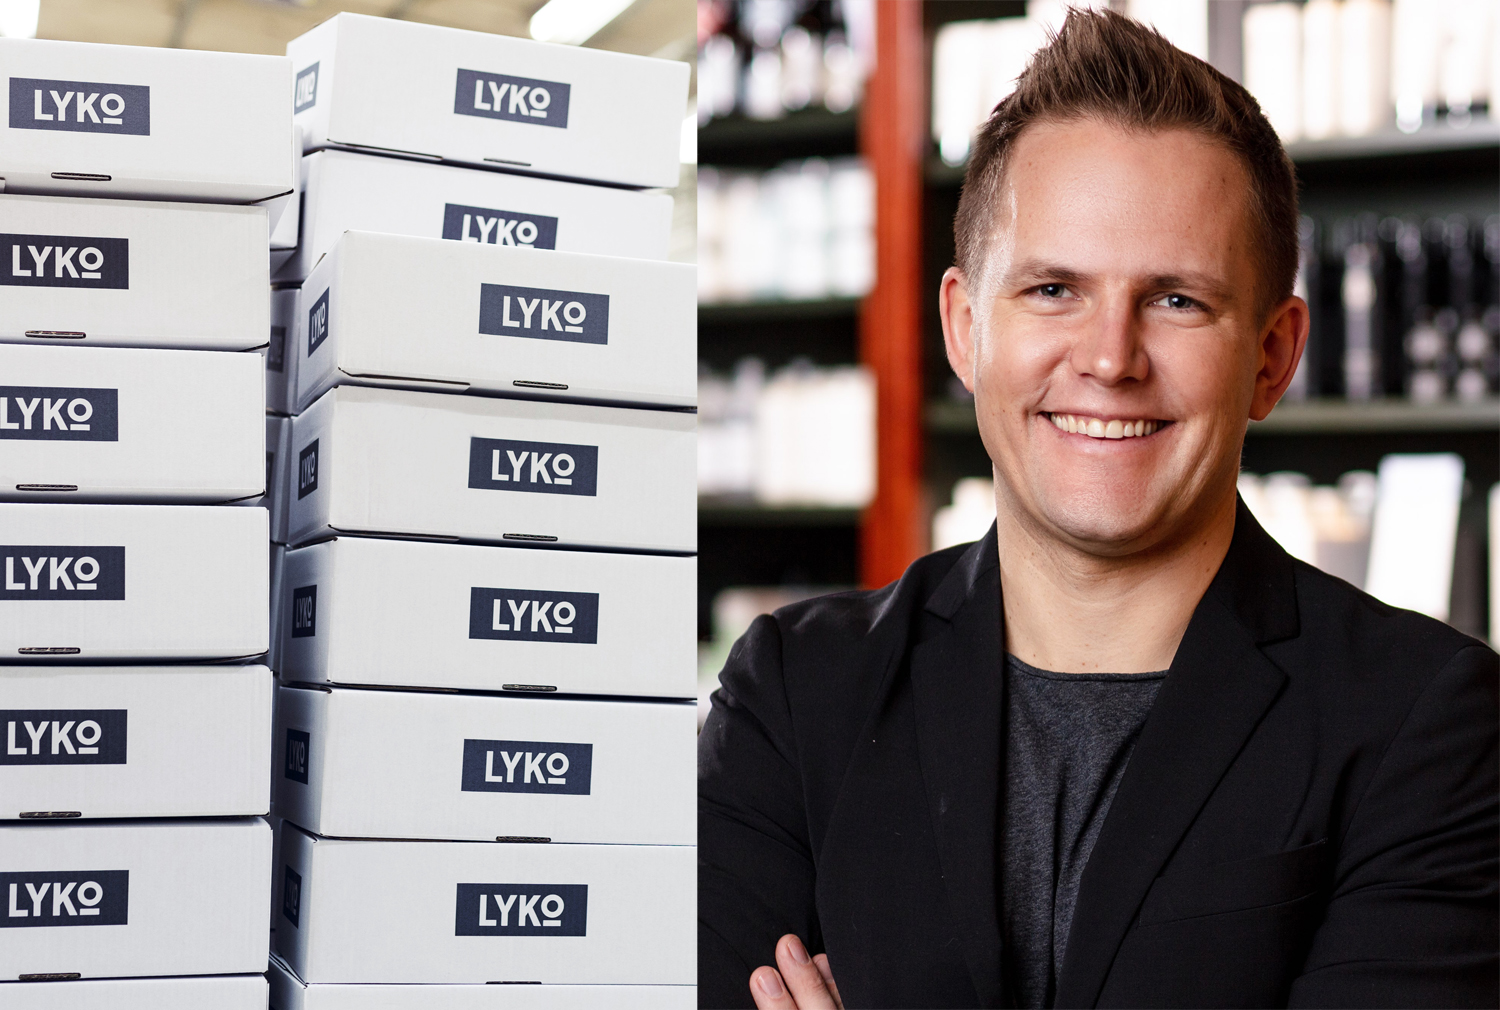 Lykos e-handel omsatte 590 miljoner kronor